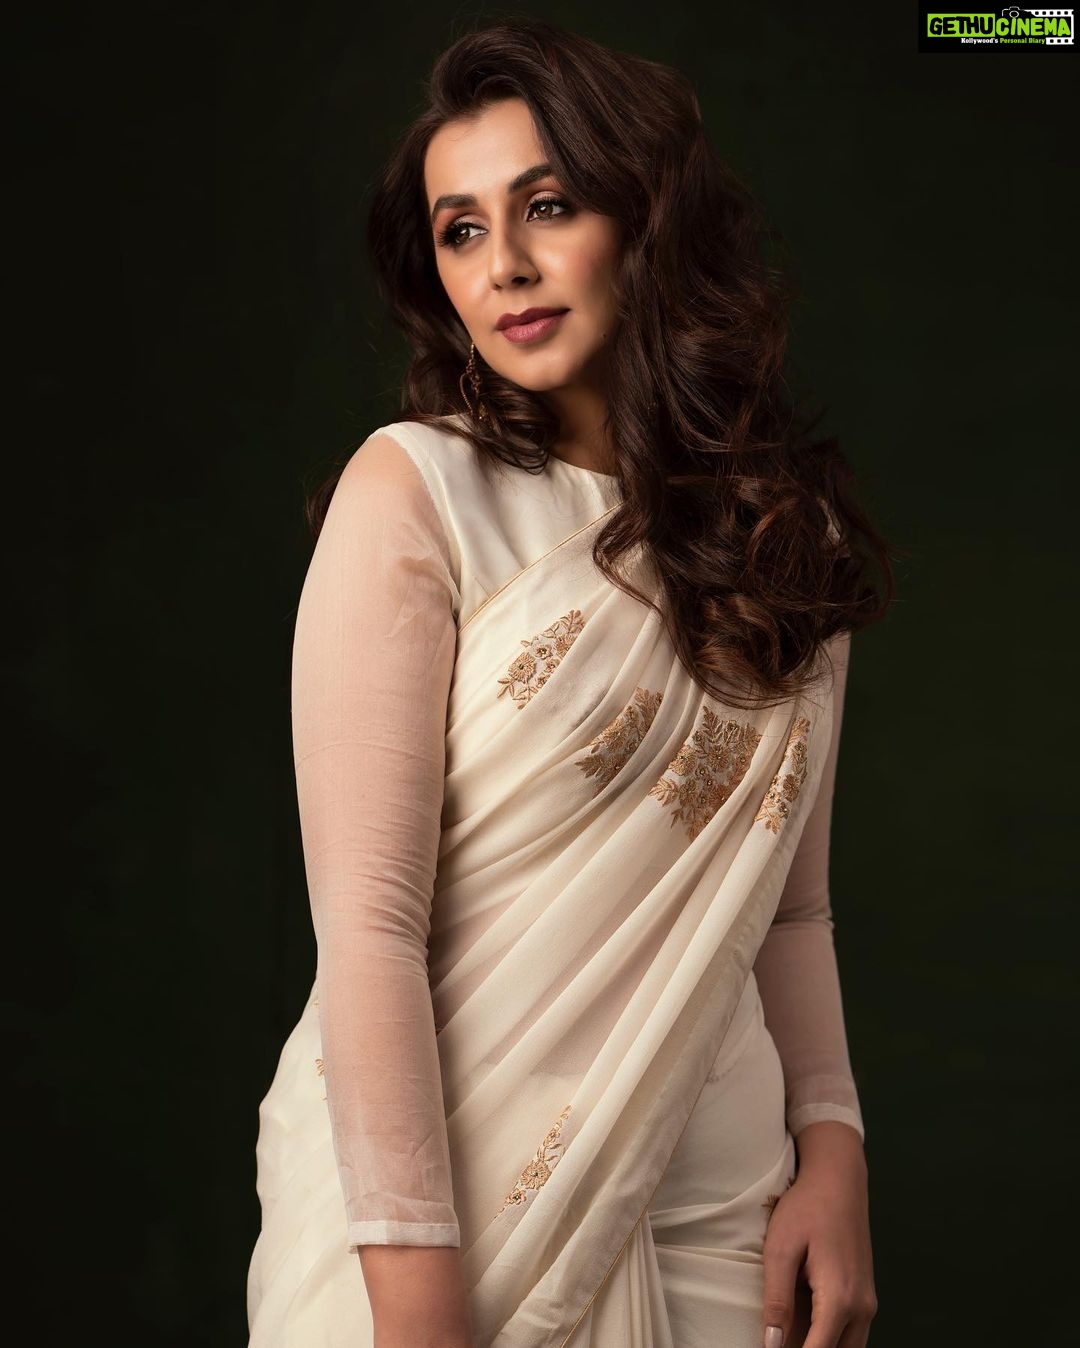 Actress Nikki Galrani HD Photos and Wallpapers January 2022 - Gethu Cinema